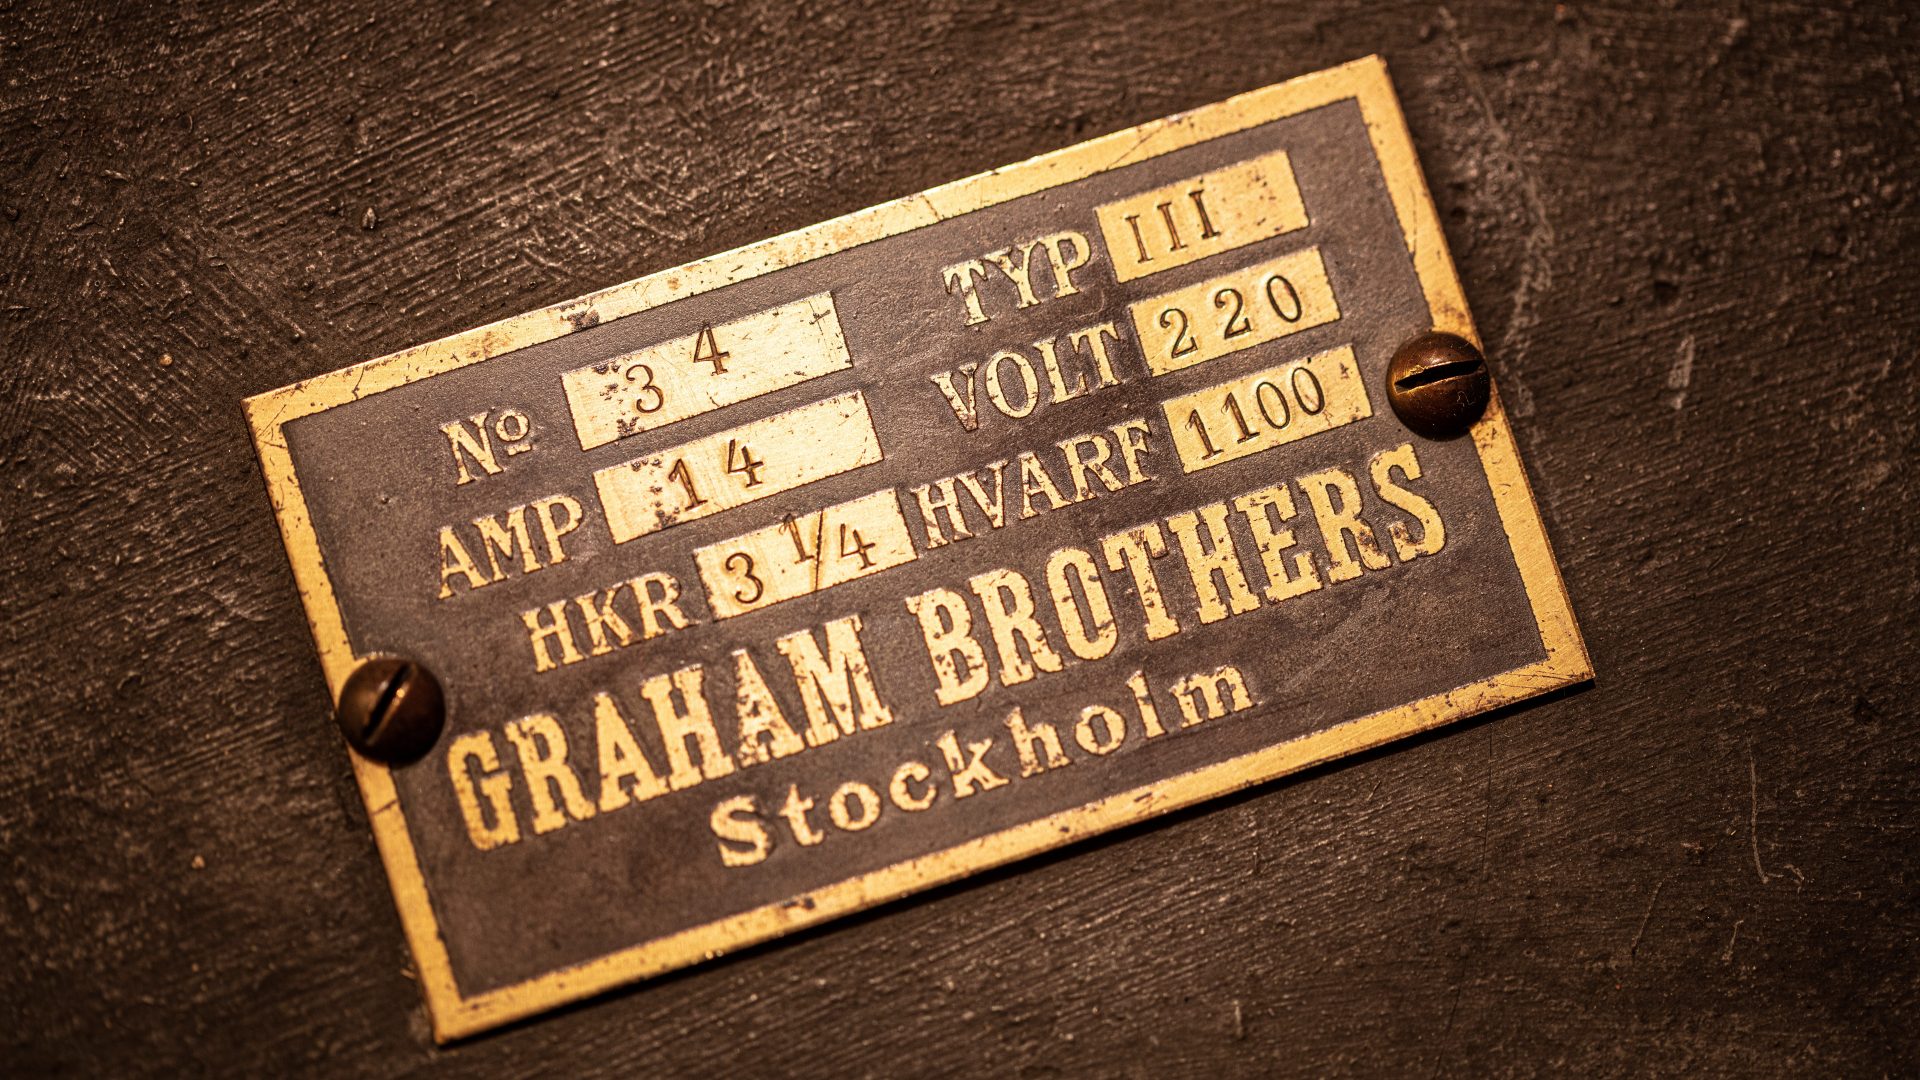 En fastskruvad metallskylt med text, bland annat namnet Graham brothers.